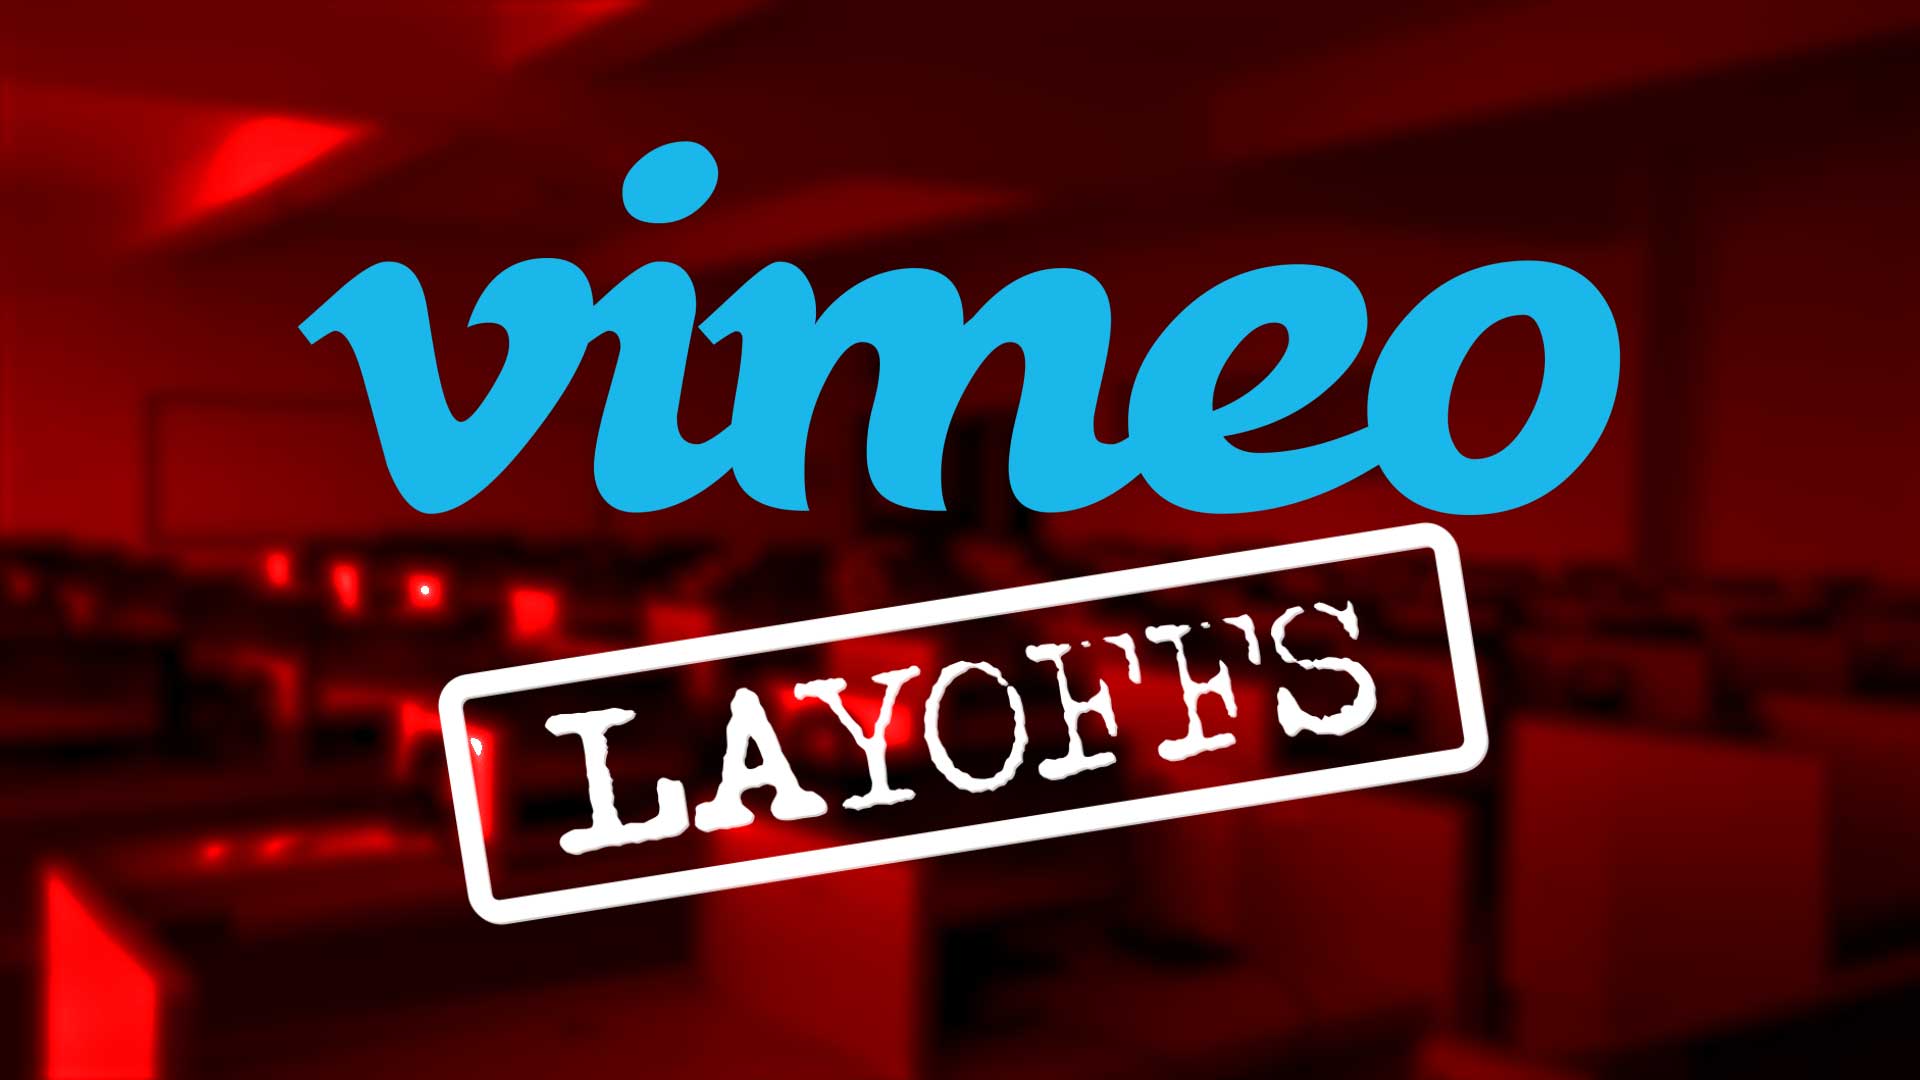 vimeo layoffs2